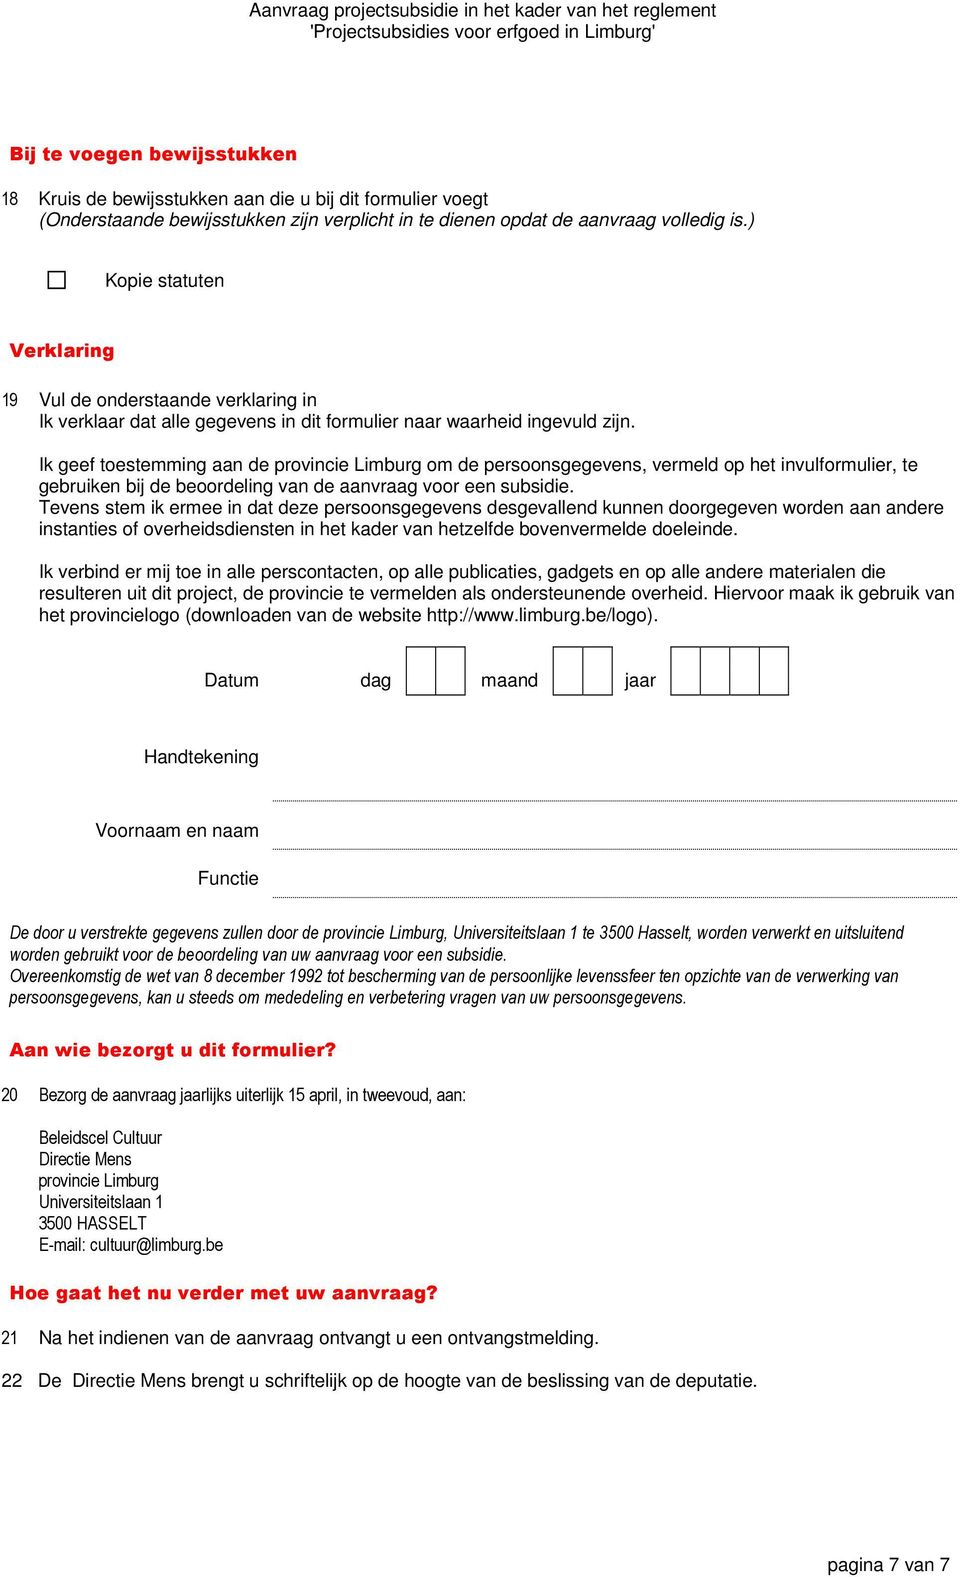 Ik geef toestemming aan de provincie Limburg om de persoonsgegevens, vermeld op het invulformulier, te gebruiken bij de beoordeling van de aanvraag voor een subsidie.